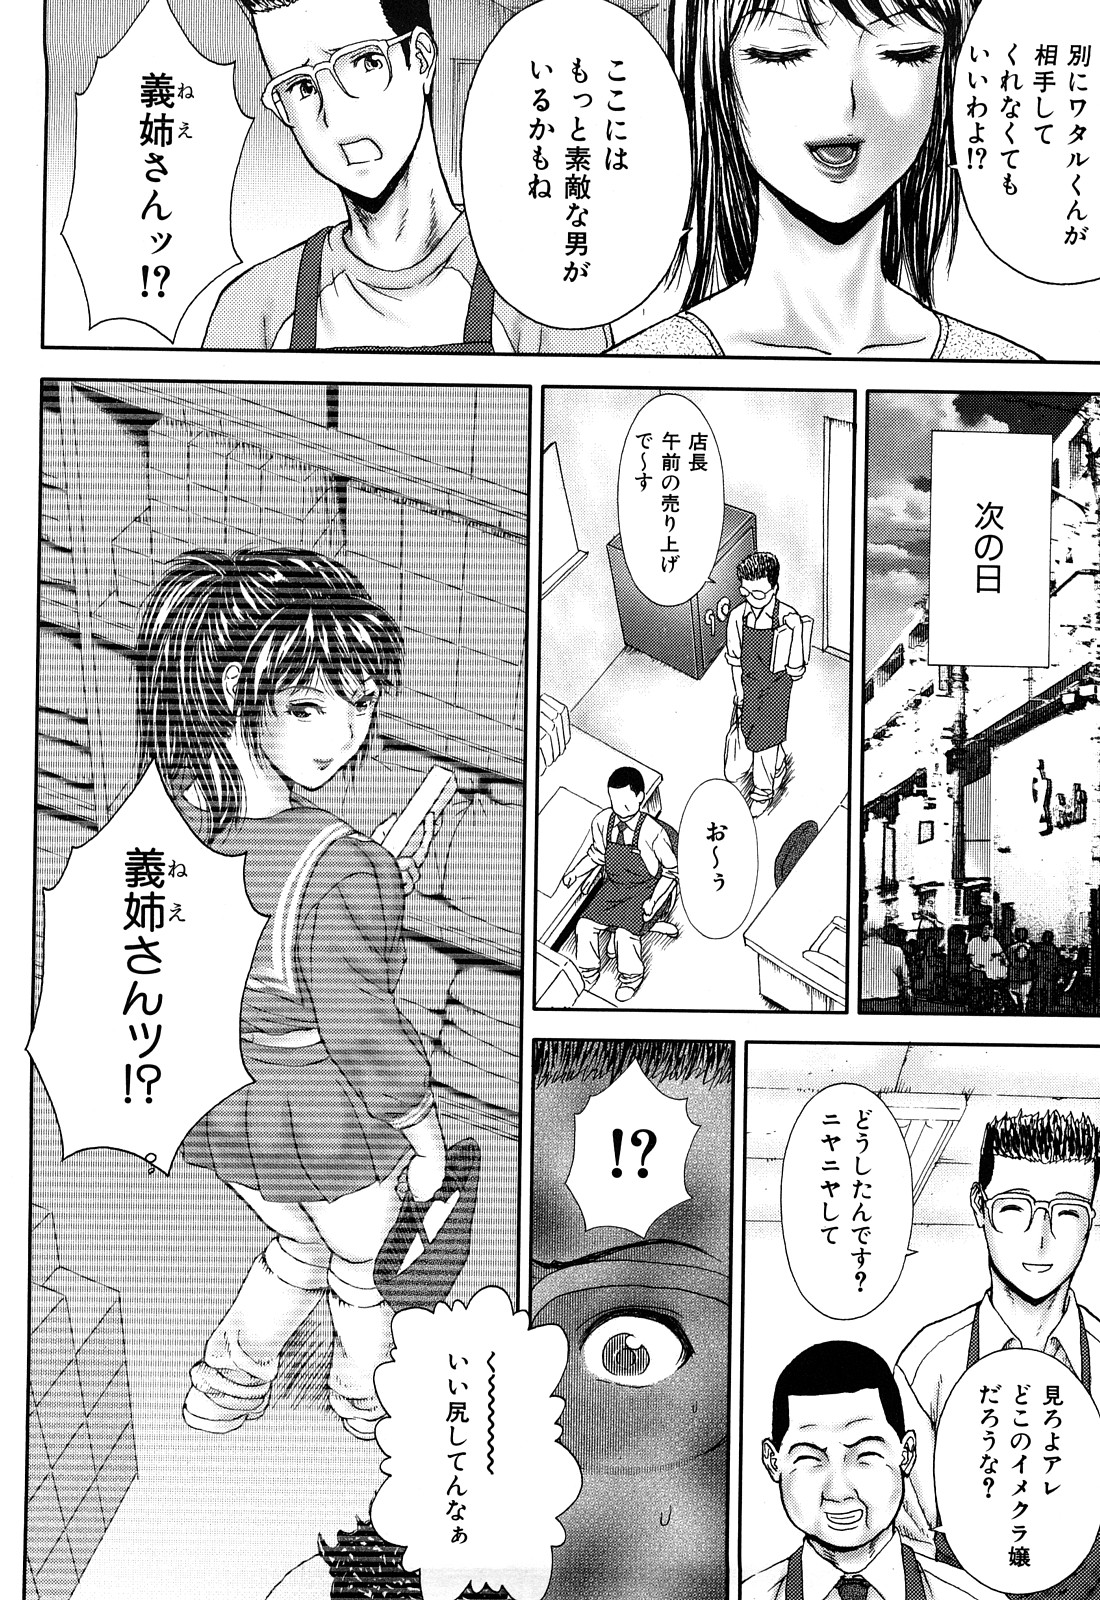 [EXTREME] Tsuma No Shizuku ~Nikuyome Miyuki 29 sai~ page 12 full